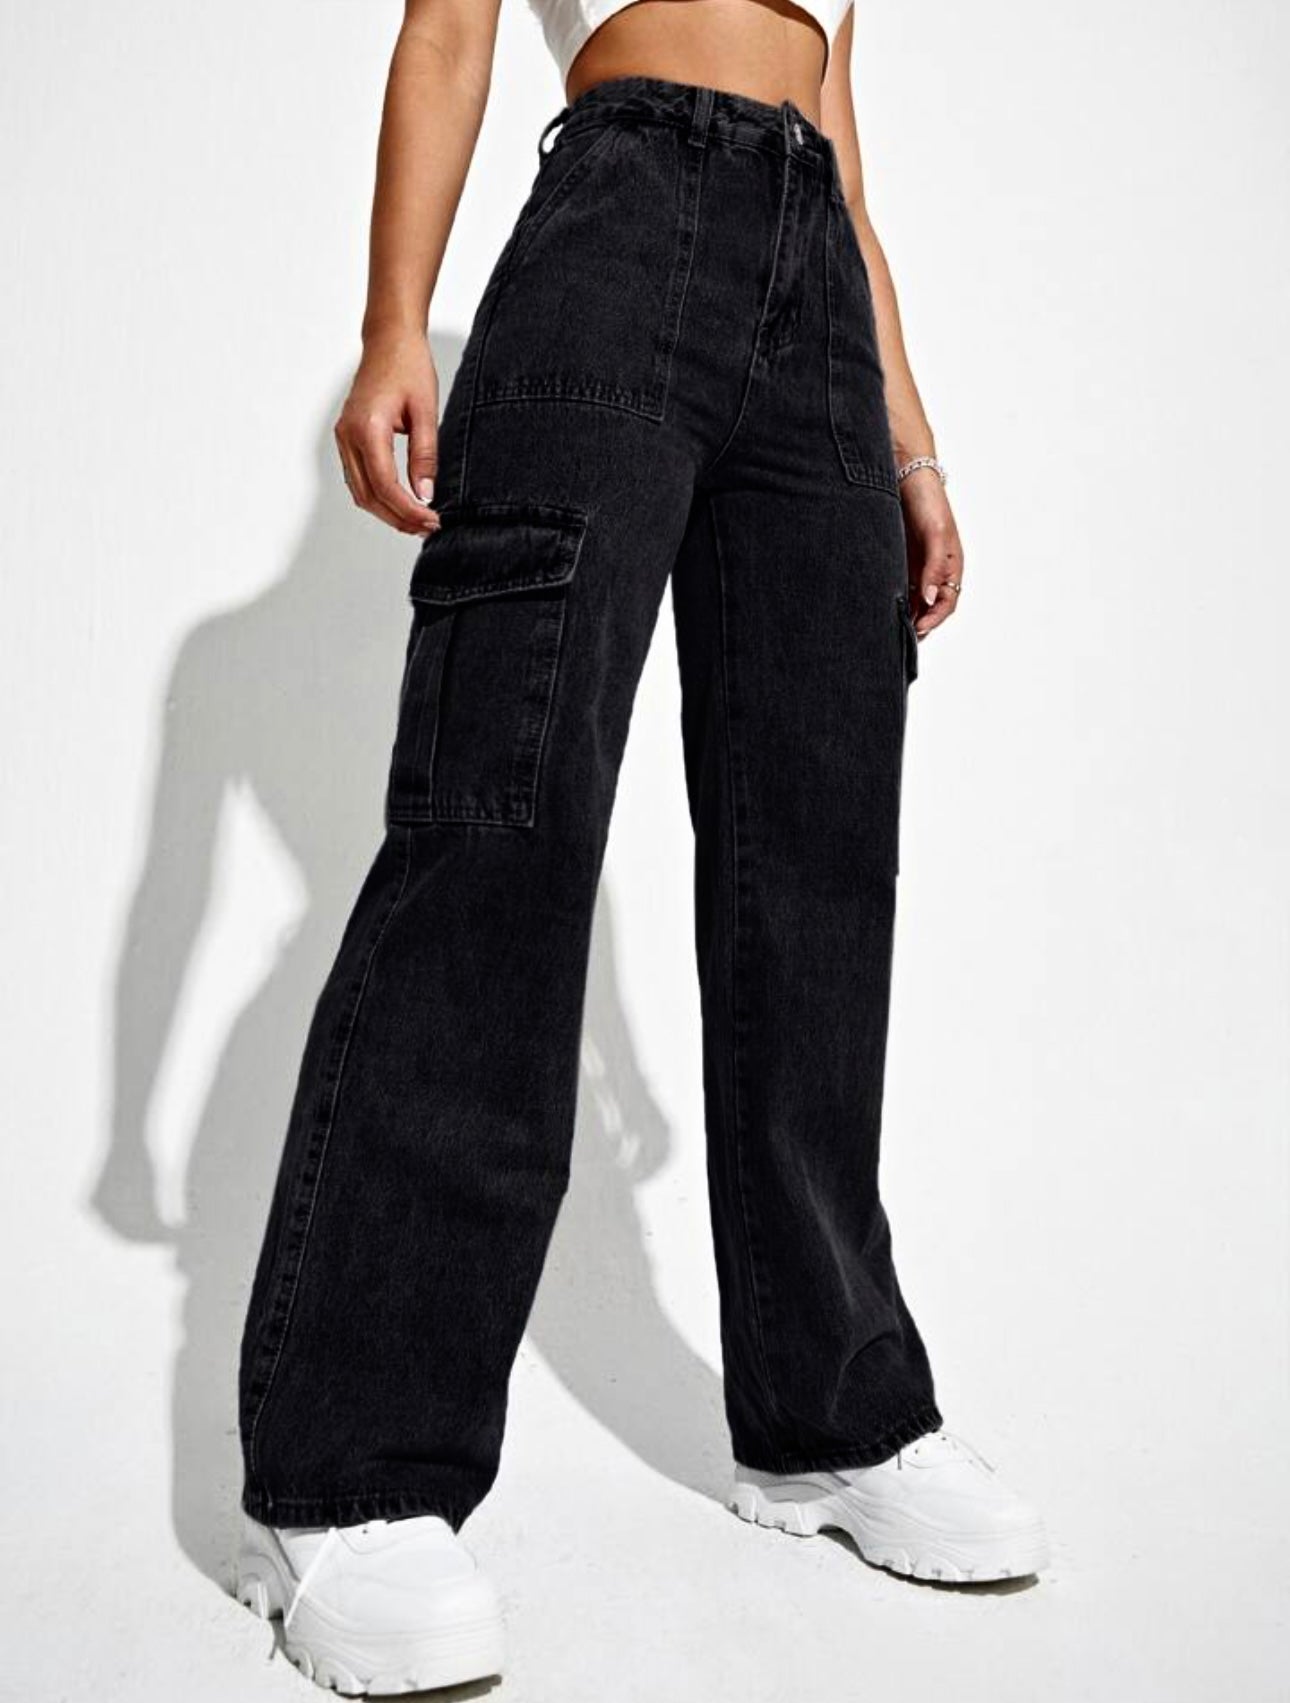 Black Wide Leg Cargo High Waist Jeans For Women & Girls